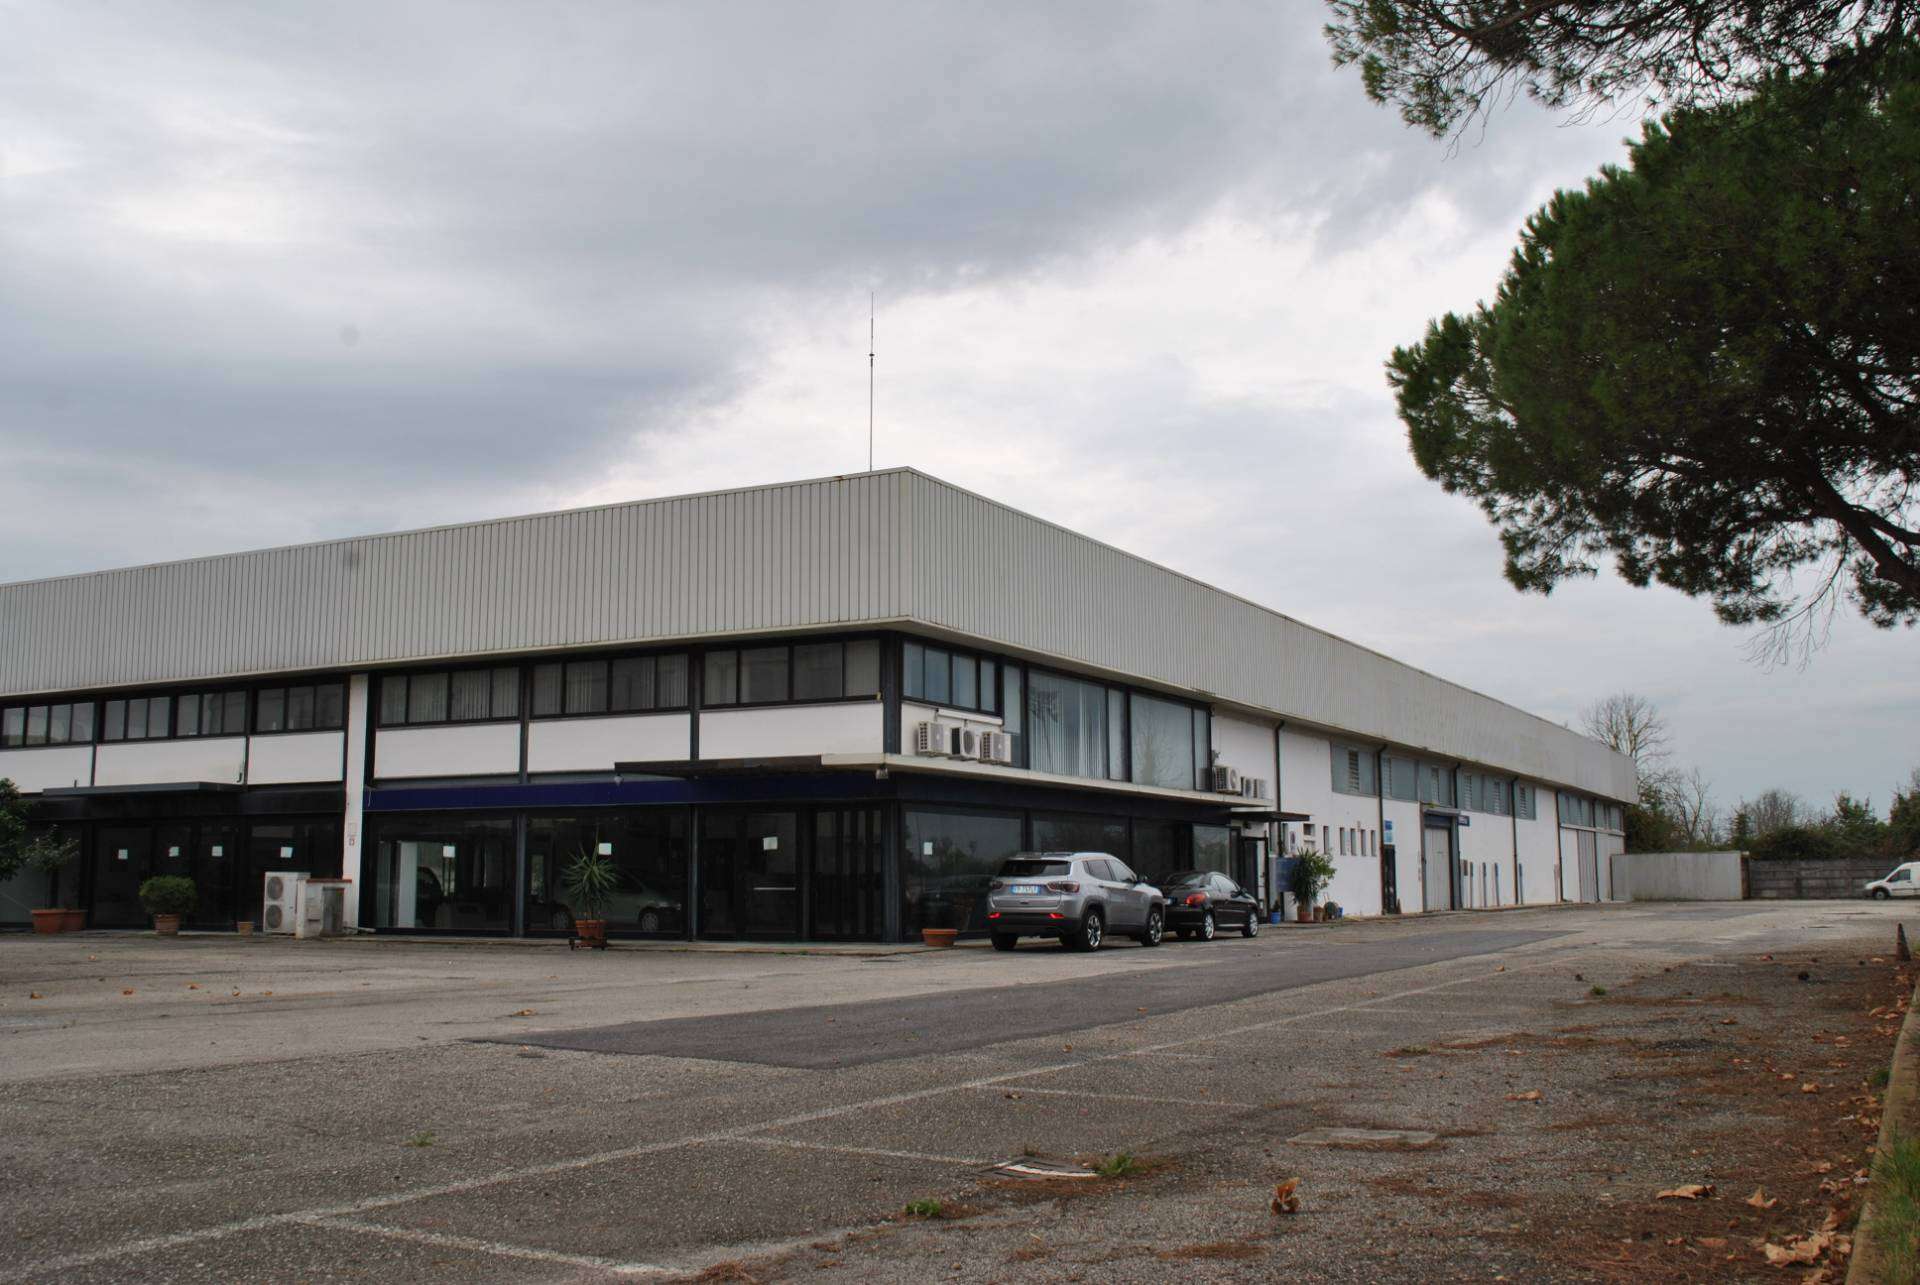 Locale commerciale in Vendita a San Giuliano Terme Giuliano Terme